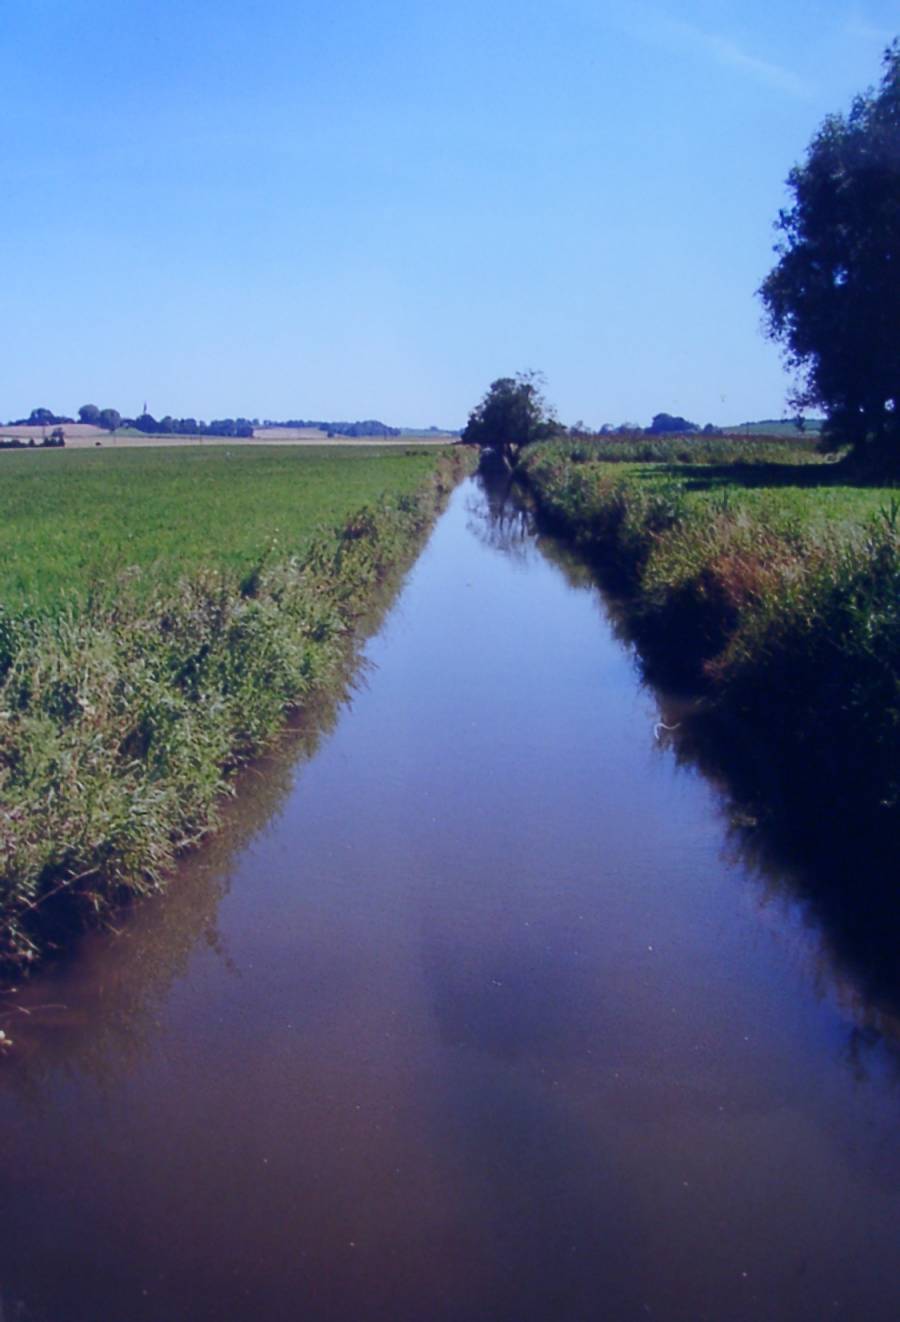 Die Glonn bei Odelzhausen. Der Flussverlauf ist ohne jegliche Flussschleifen. Die Glonn fließt monoton in ihrem künstlichen Flussbett.